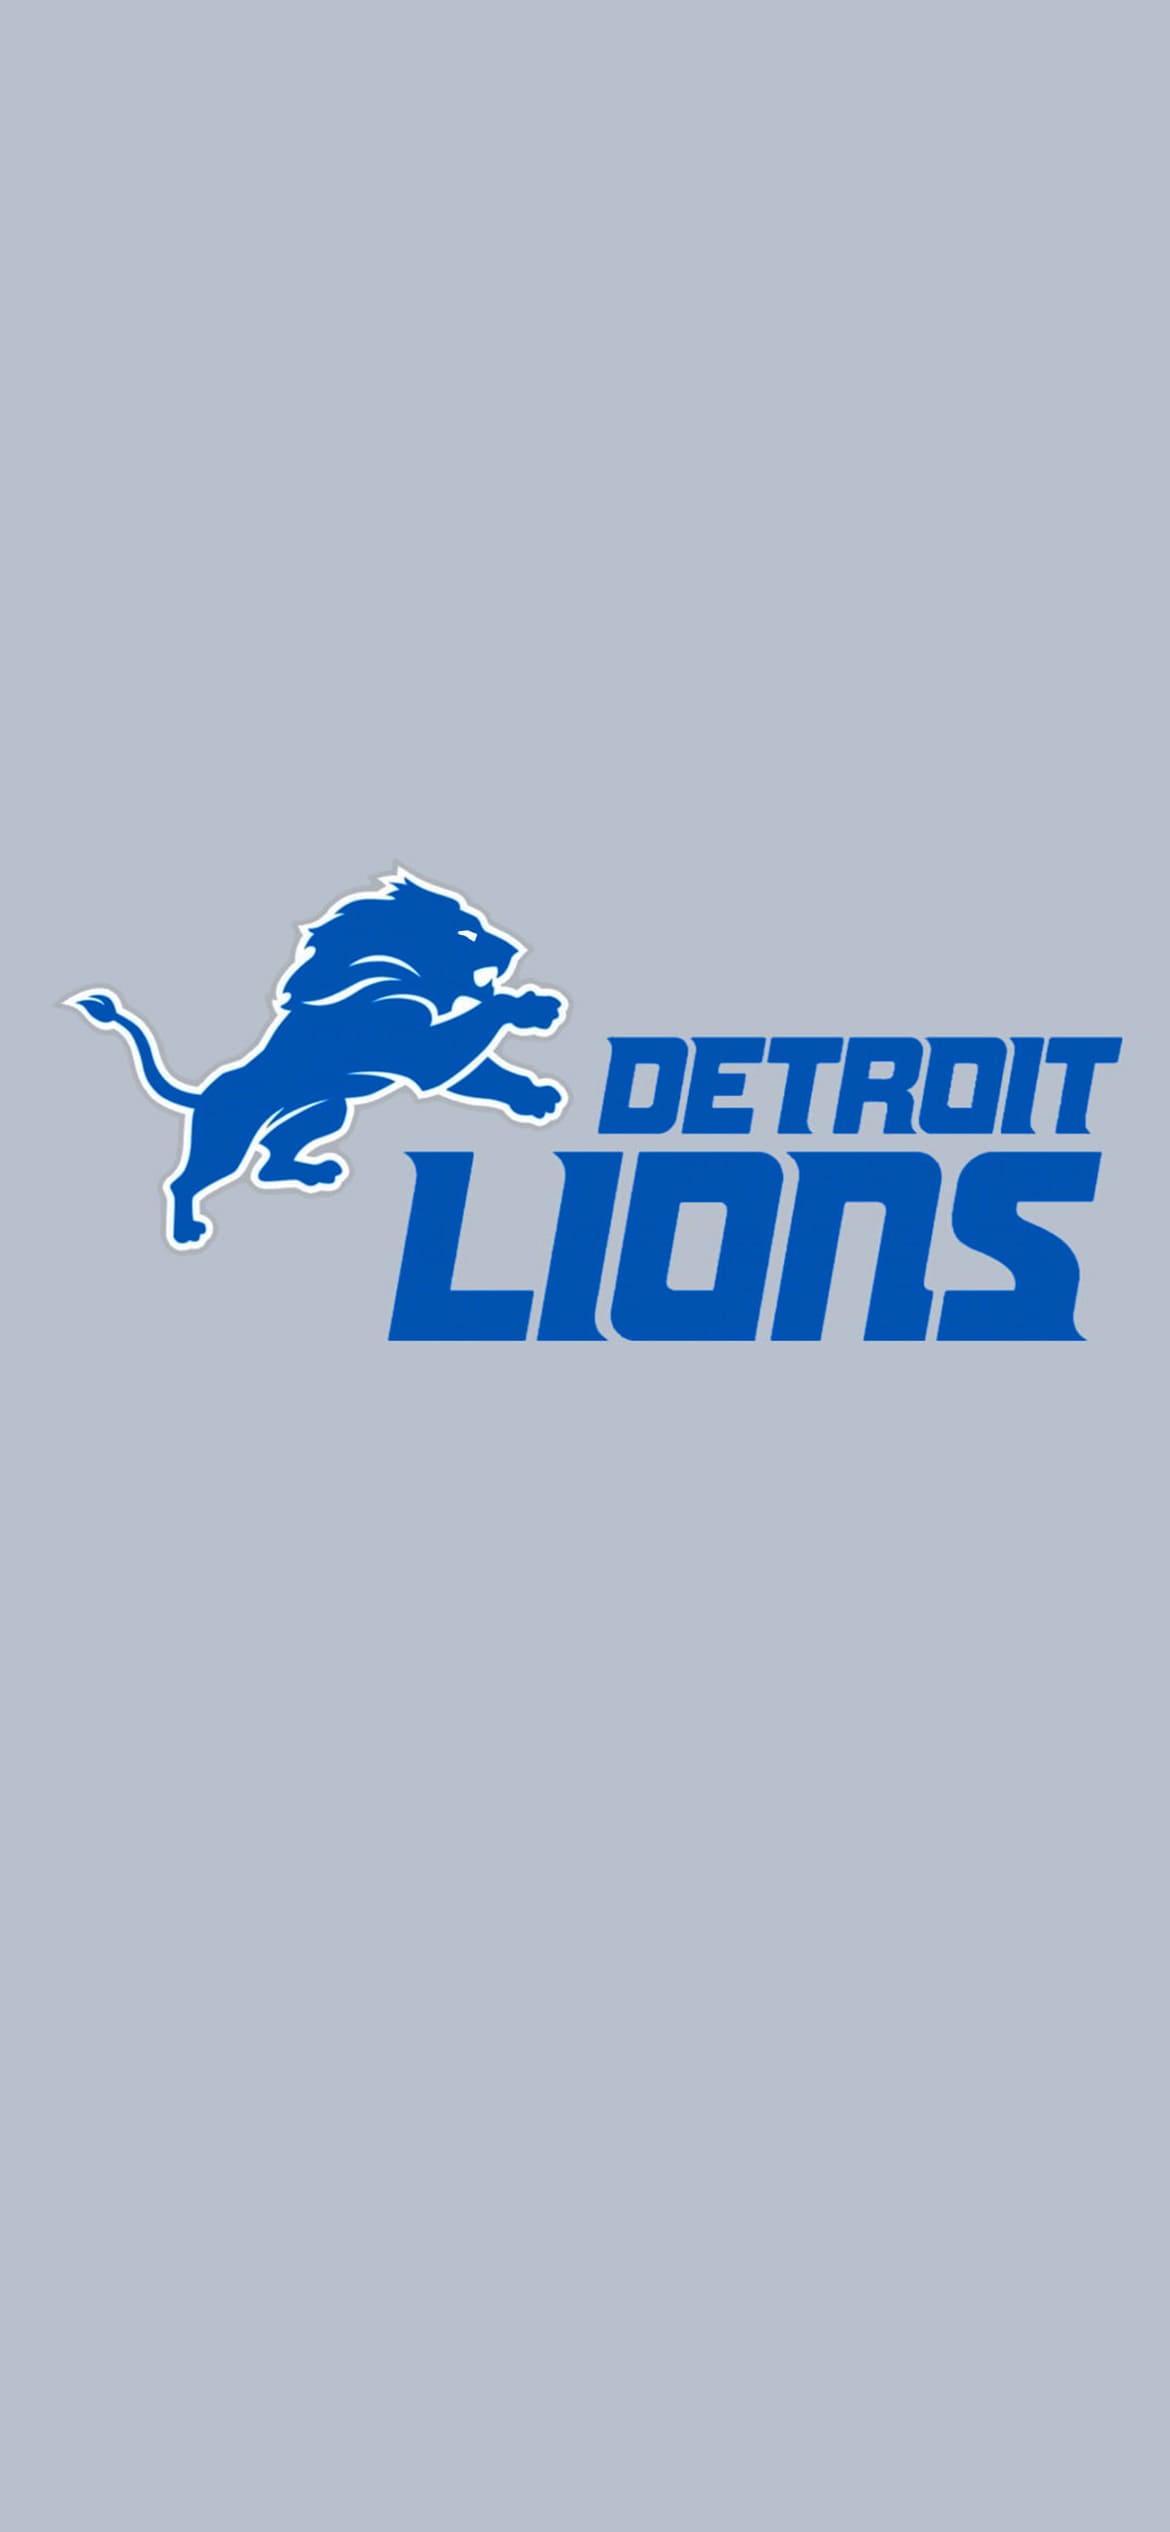 Detroit Lions Wallpapers